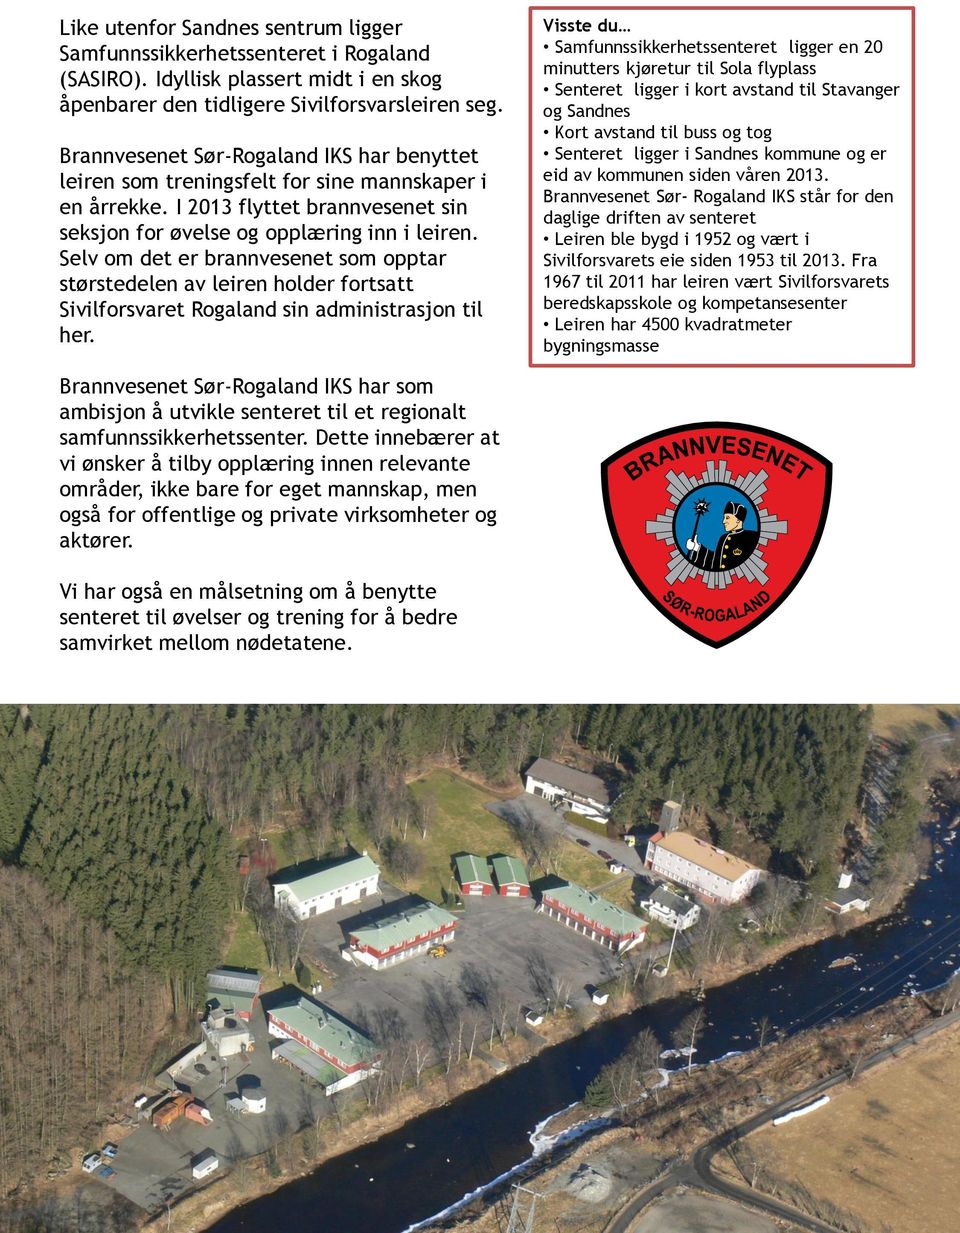 Selv om det er brannvesenet som opptar størstedelen av leiren holder fortsatt Sivilforsvaret Rogaland sin administrasjon til her.